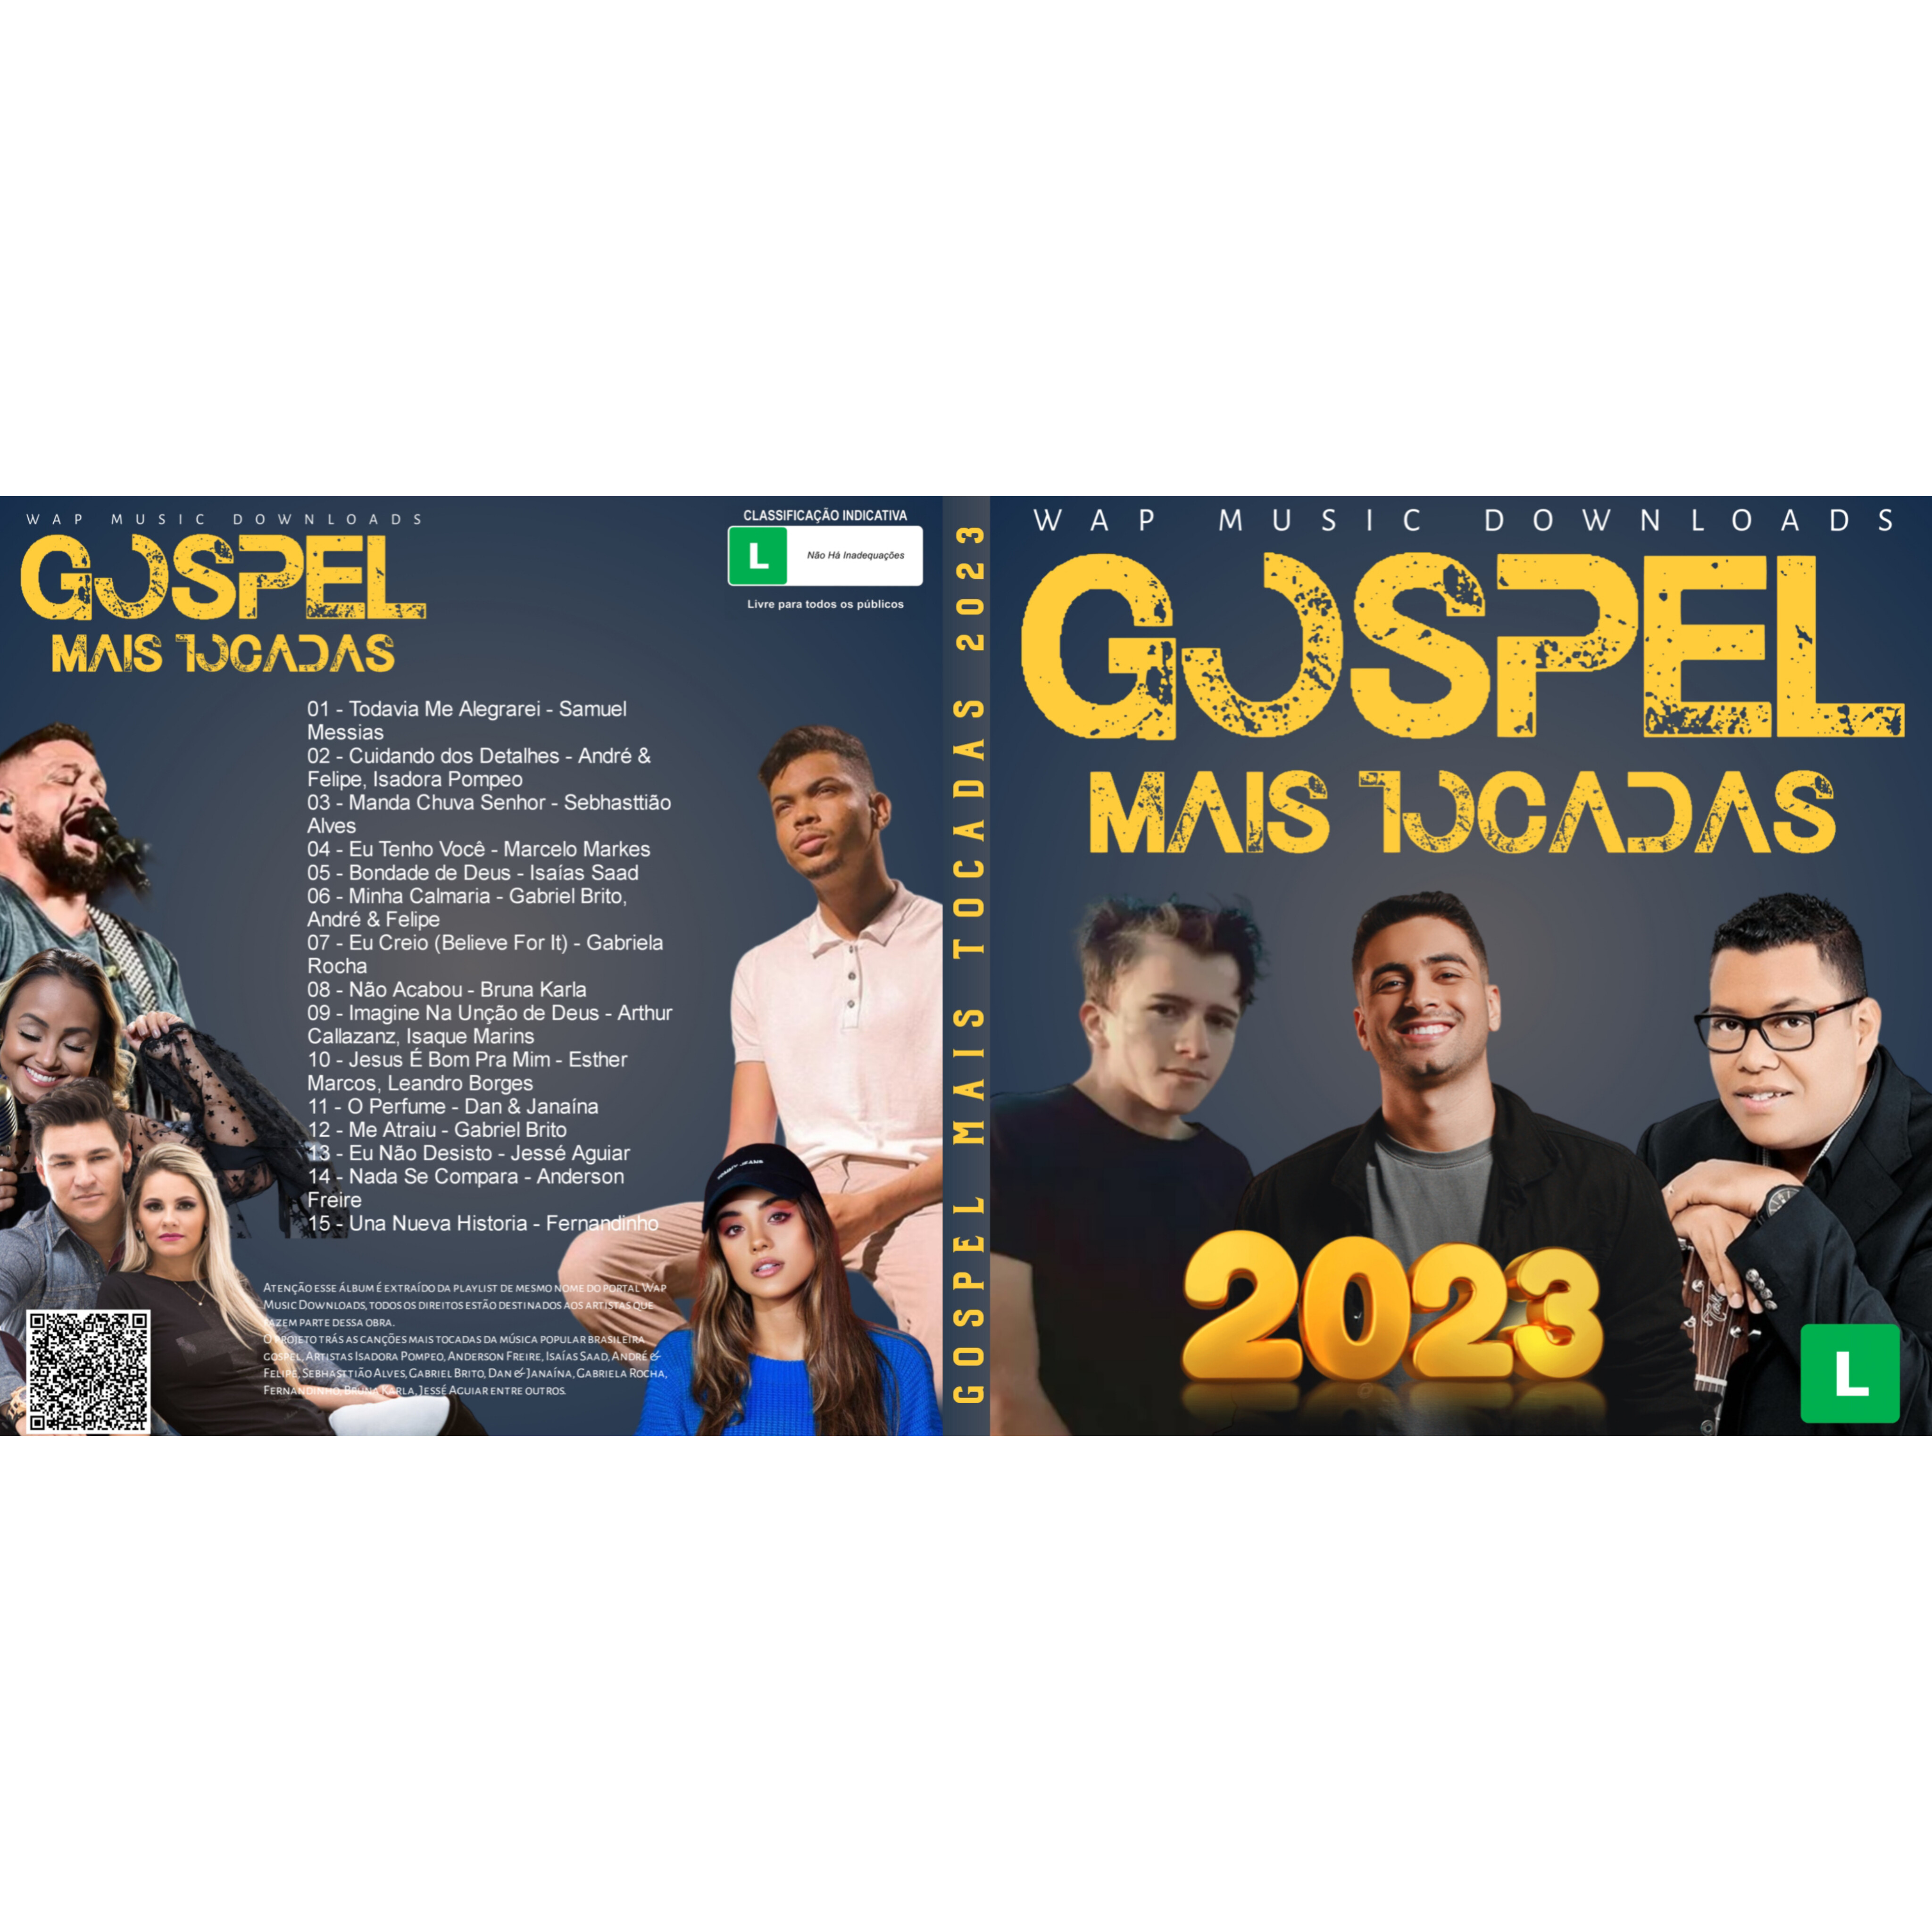 BAIXAR CD GOSPEL MÚSICAS MAIS TOCADAS 2023 - GOSPEL 2023